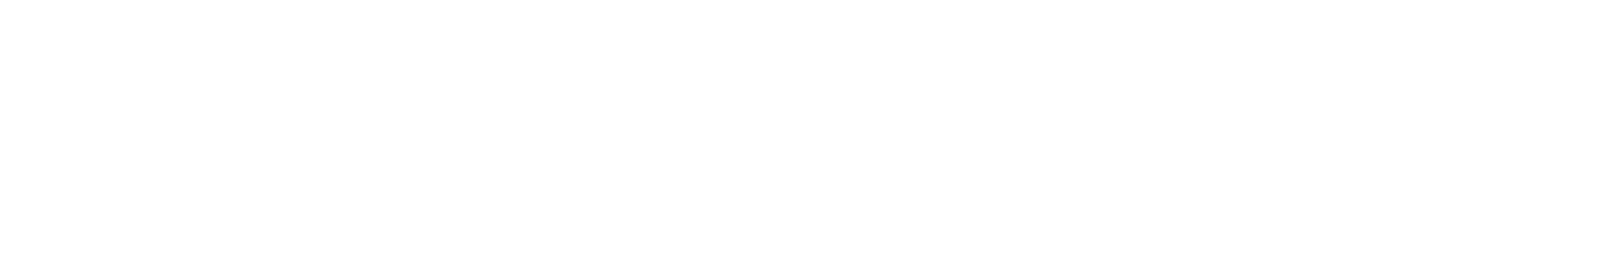 Poshmark logo large for dark backgrounds (transparent PNG)